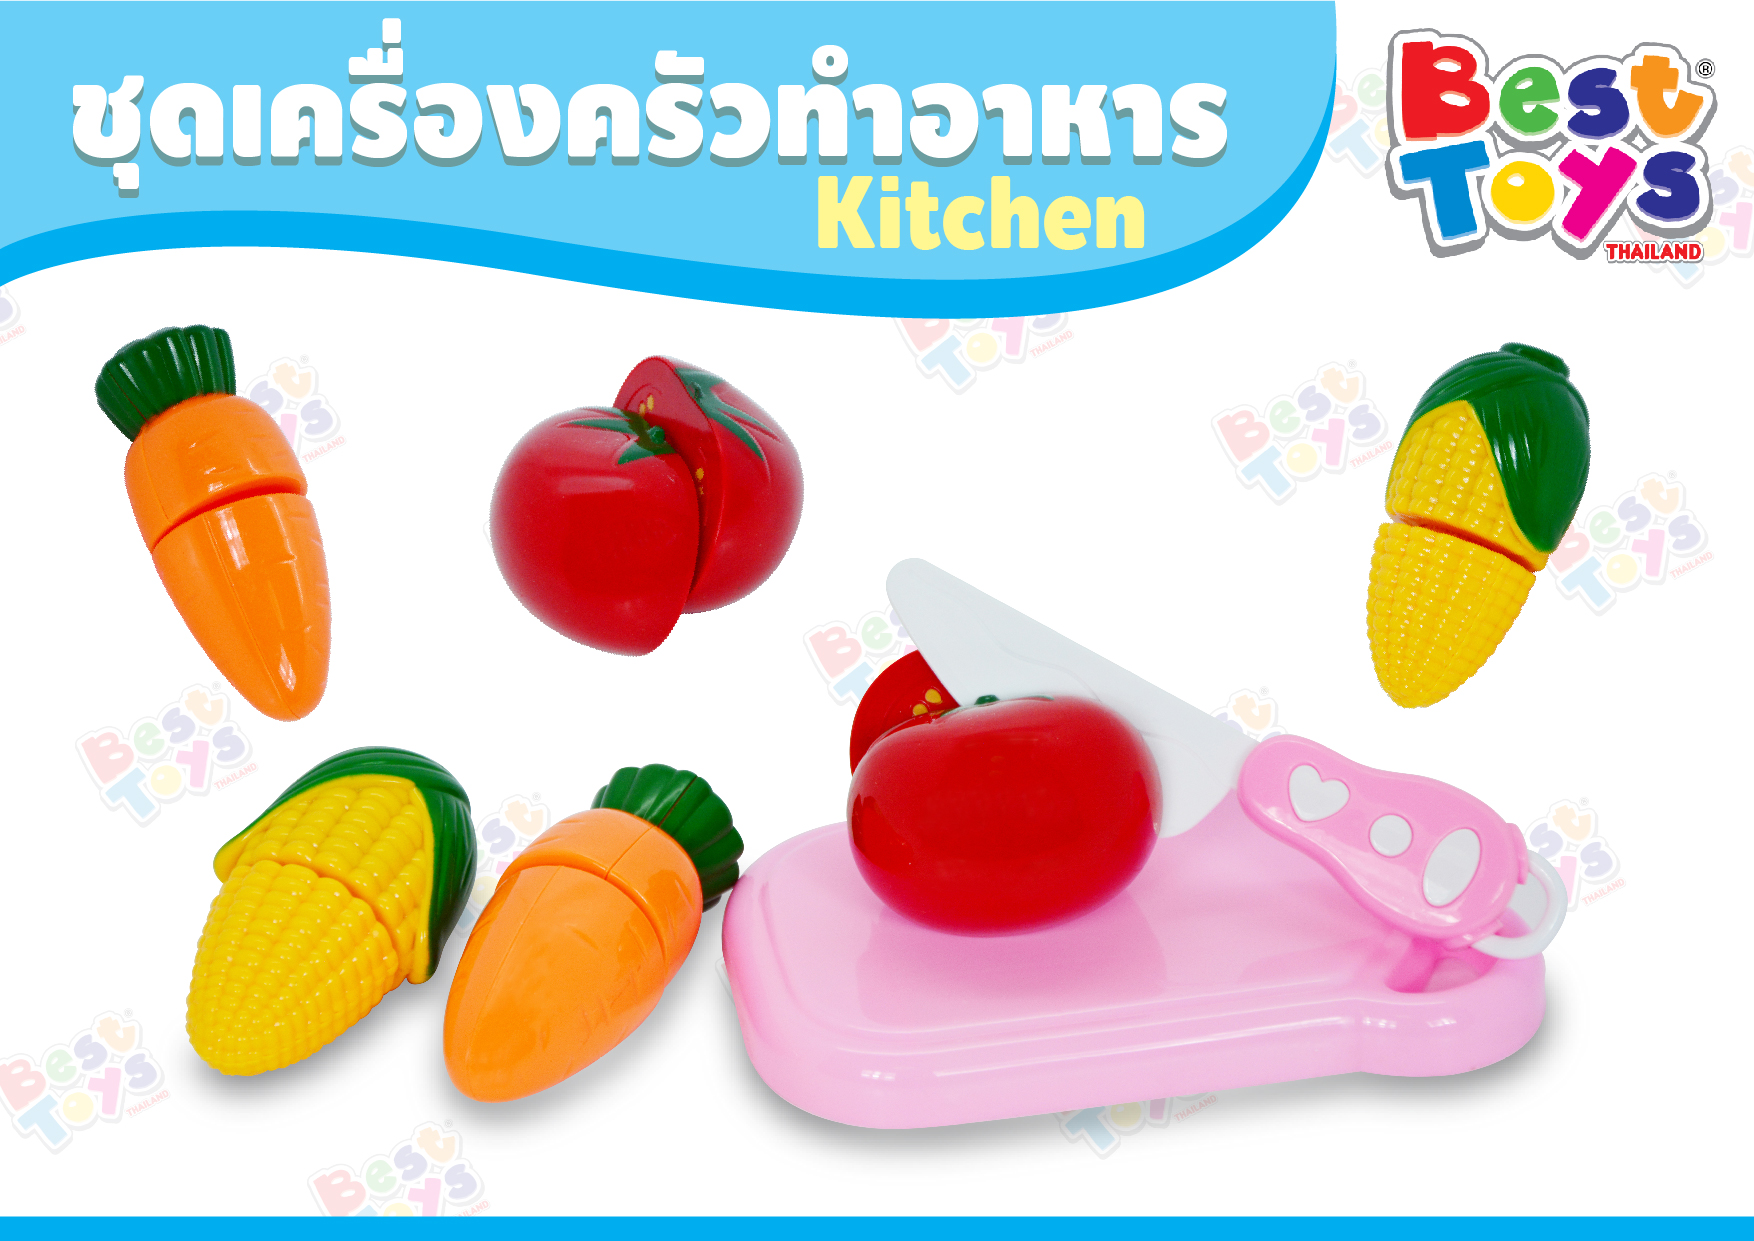 ชุดของเล่นผัก-ผลไม้ Kitchen พลาสติก แบบหั่นแยกได้ เหมาะสำหรับเด็ก เสริมทักษพัฒนาการ การเรียนรู้ สี ชื่อผลไม้สนุกเพลิดเพลิน#Best Toys# เบสทอย#